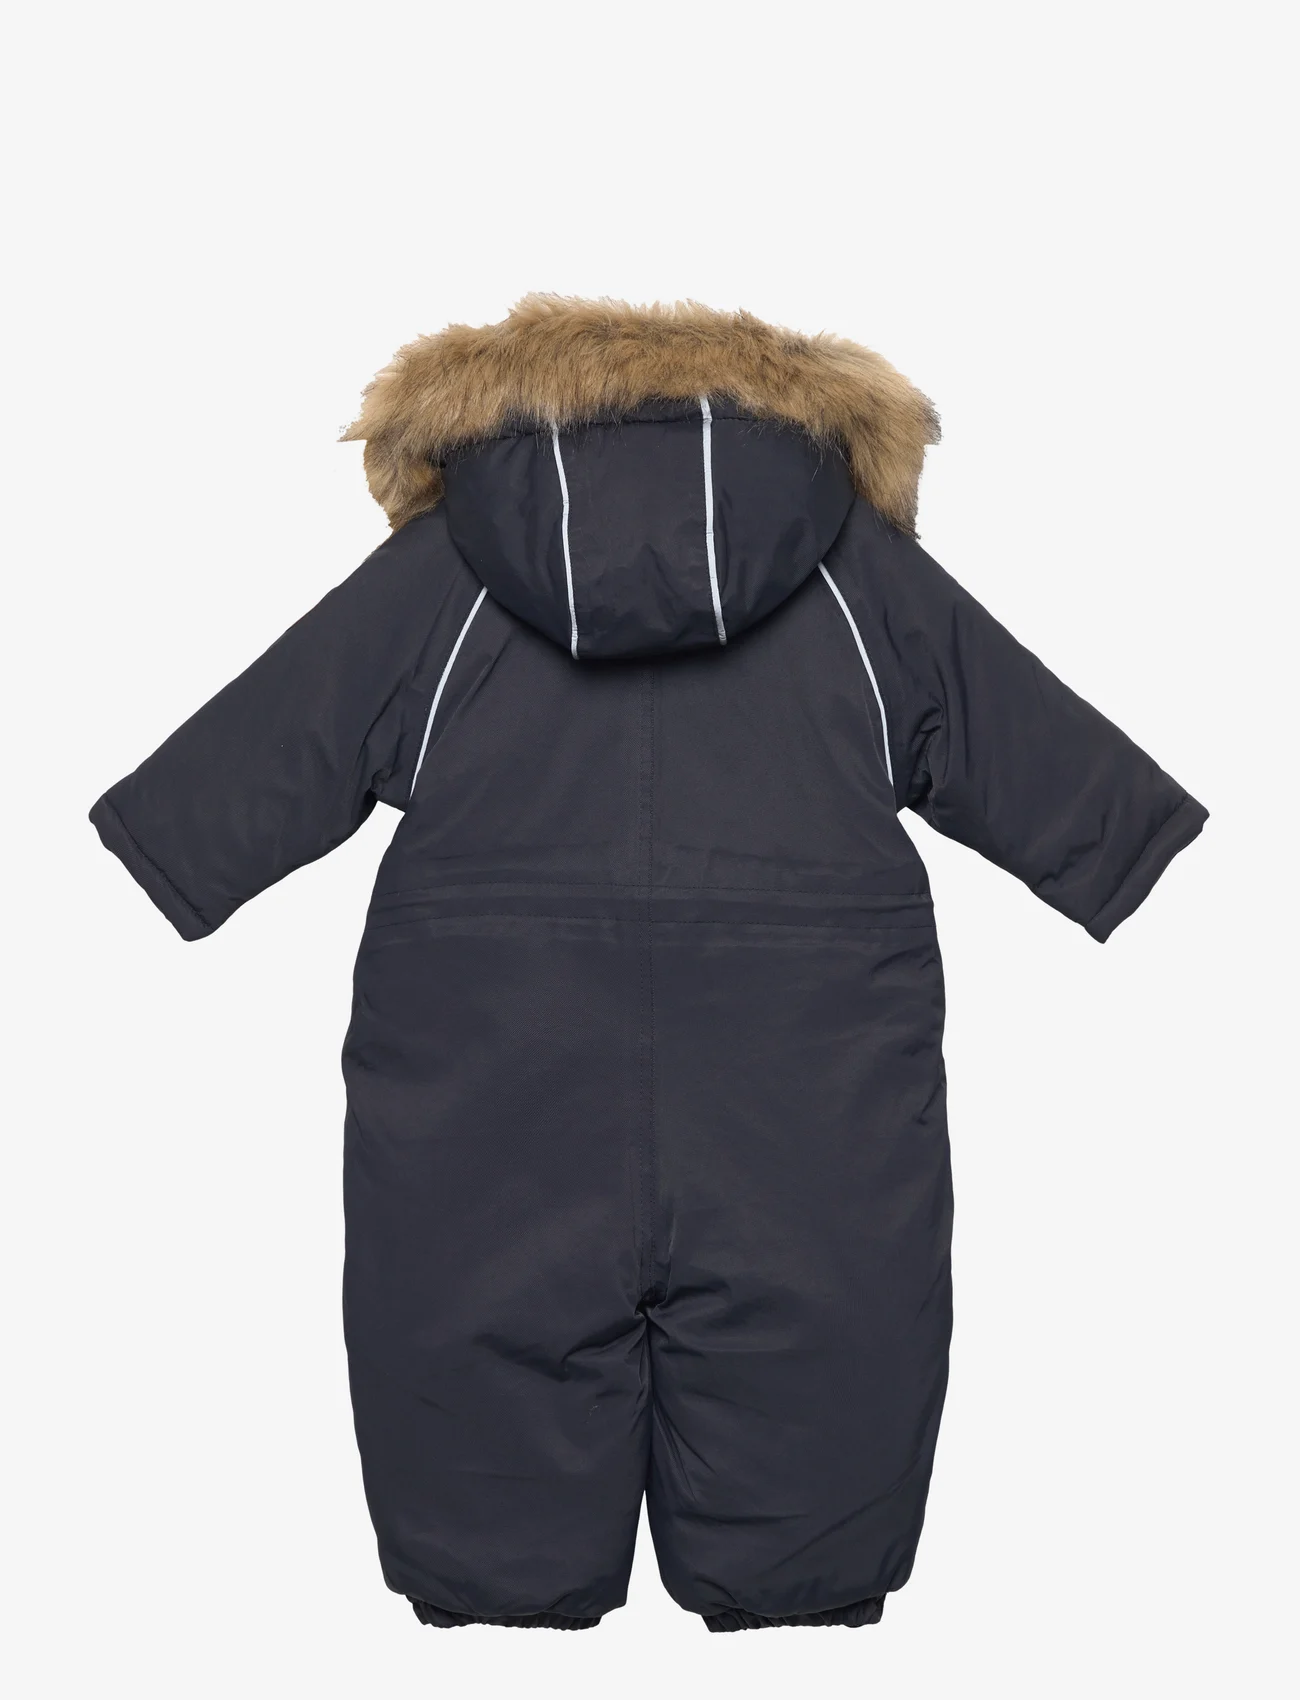 mikk-line - Twill Nylon Baby suit - talvihaalari - dark navy - 1